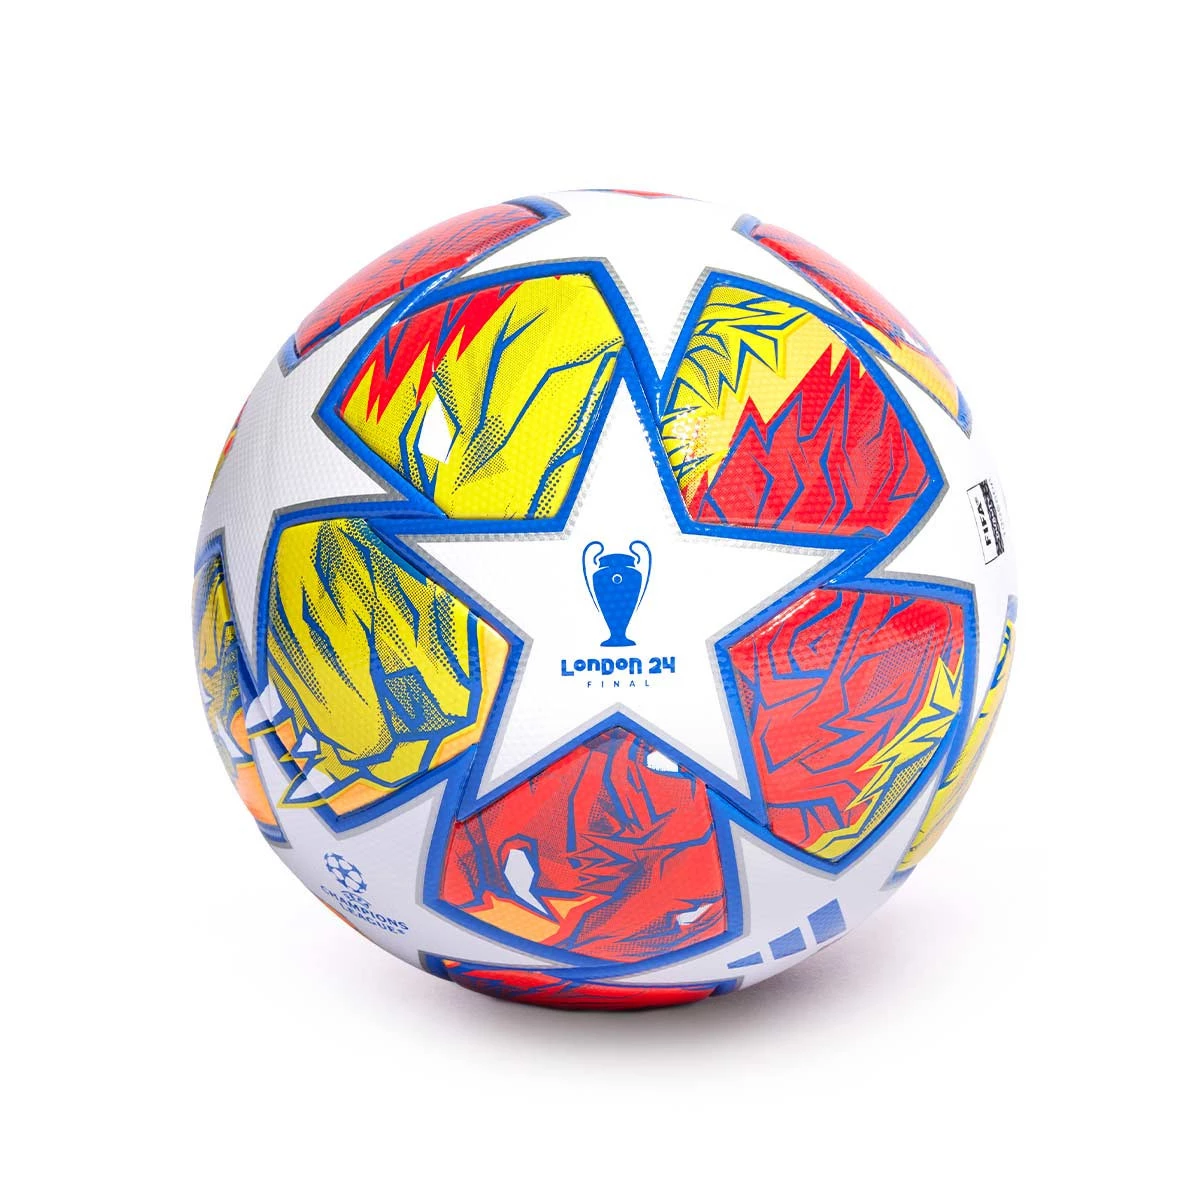 Nuevo balón de la Champions League 20 Aniversario - Blogs - Fútbol Emotion